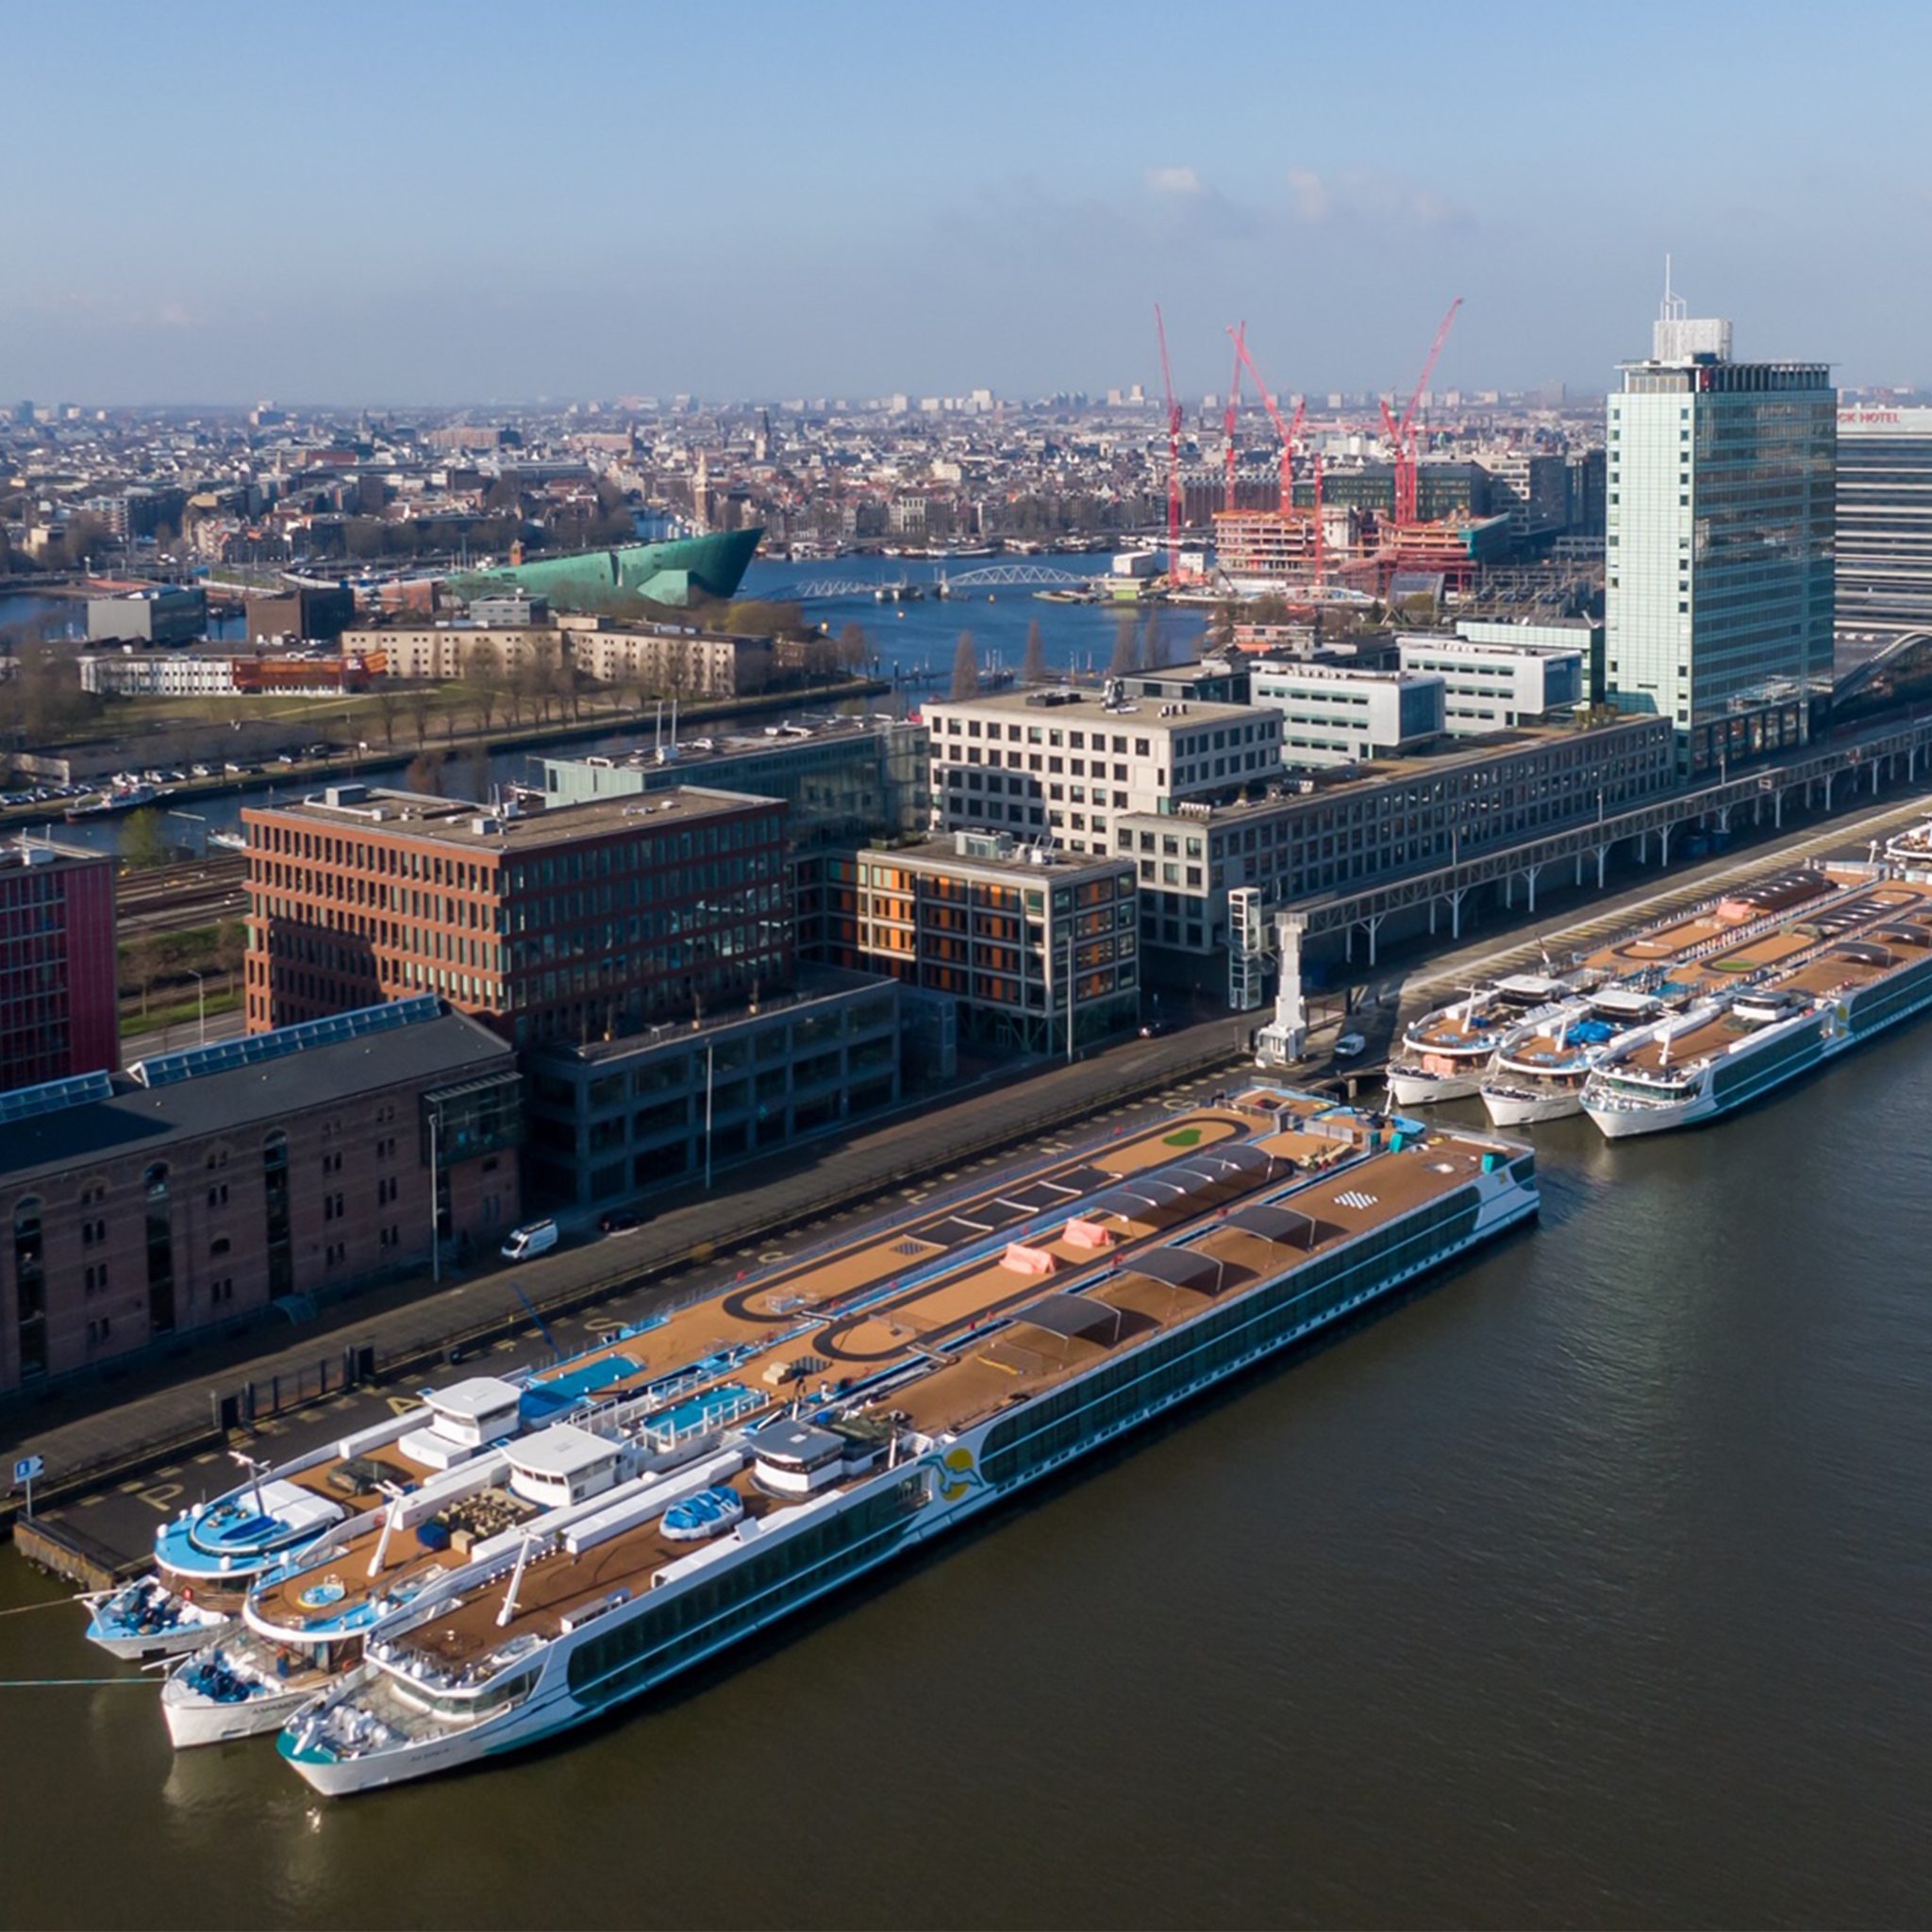 Rivertech in Arnhem beheert een vloot van 24 schepen, waarvan er nu 13 afgemeerd liggen bij de PTA-terminal in Amsterdam. (Foto via Rivertech)